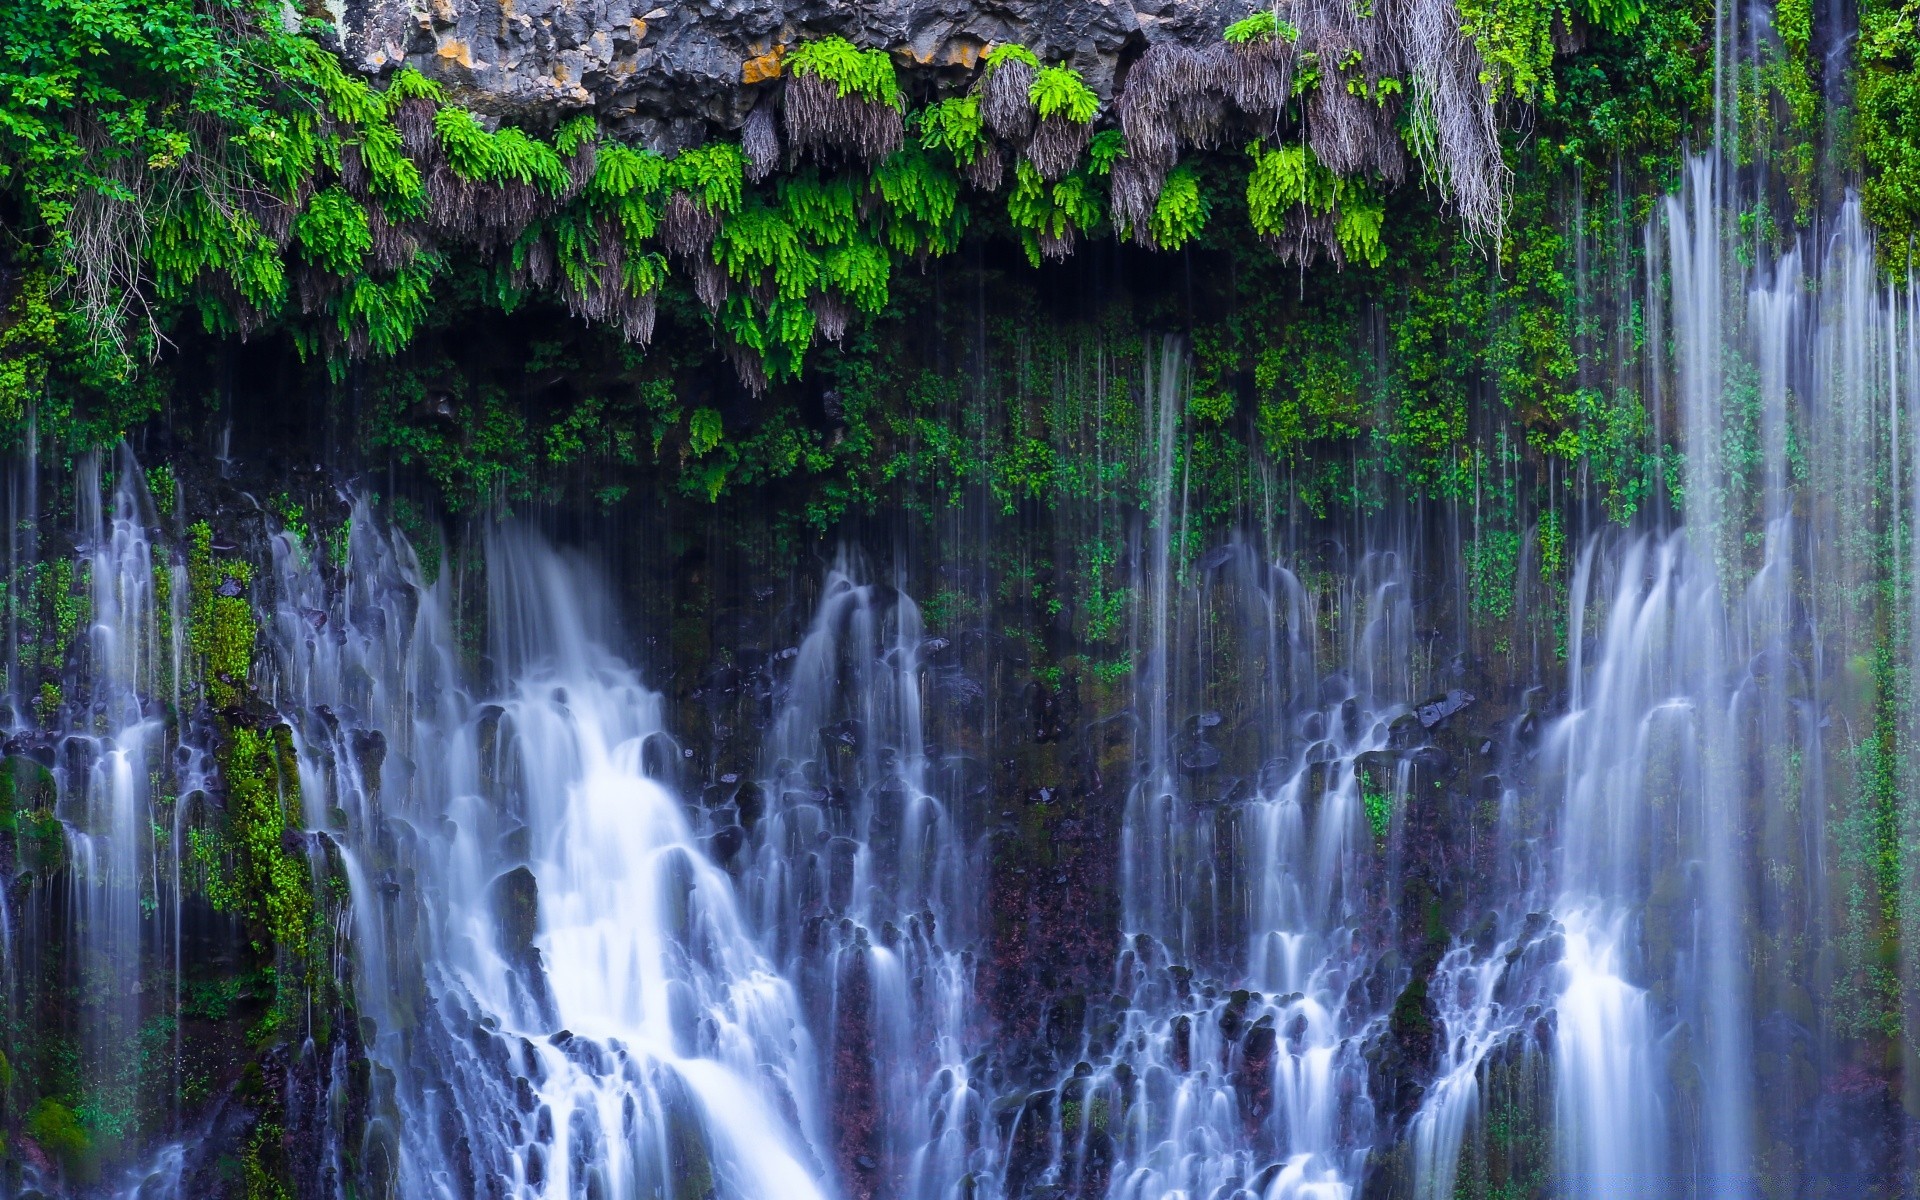 америка водопад воды природа поток лист каскад древесины мокрый река поток флора на открытом воздухе осень тропический парк движения пейзаж джунгли всплеск